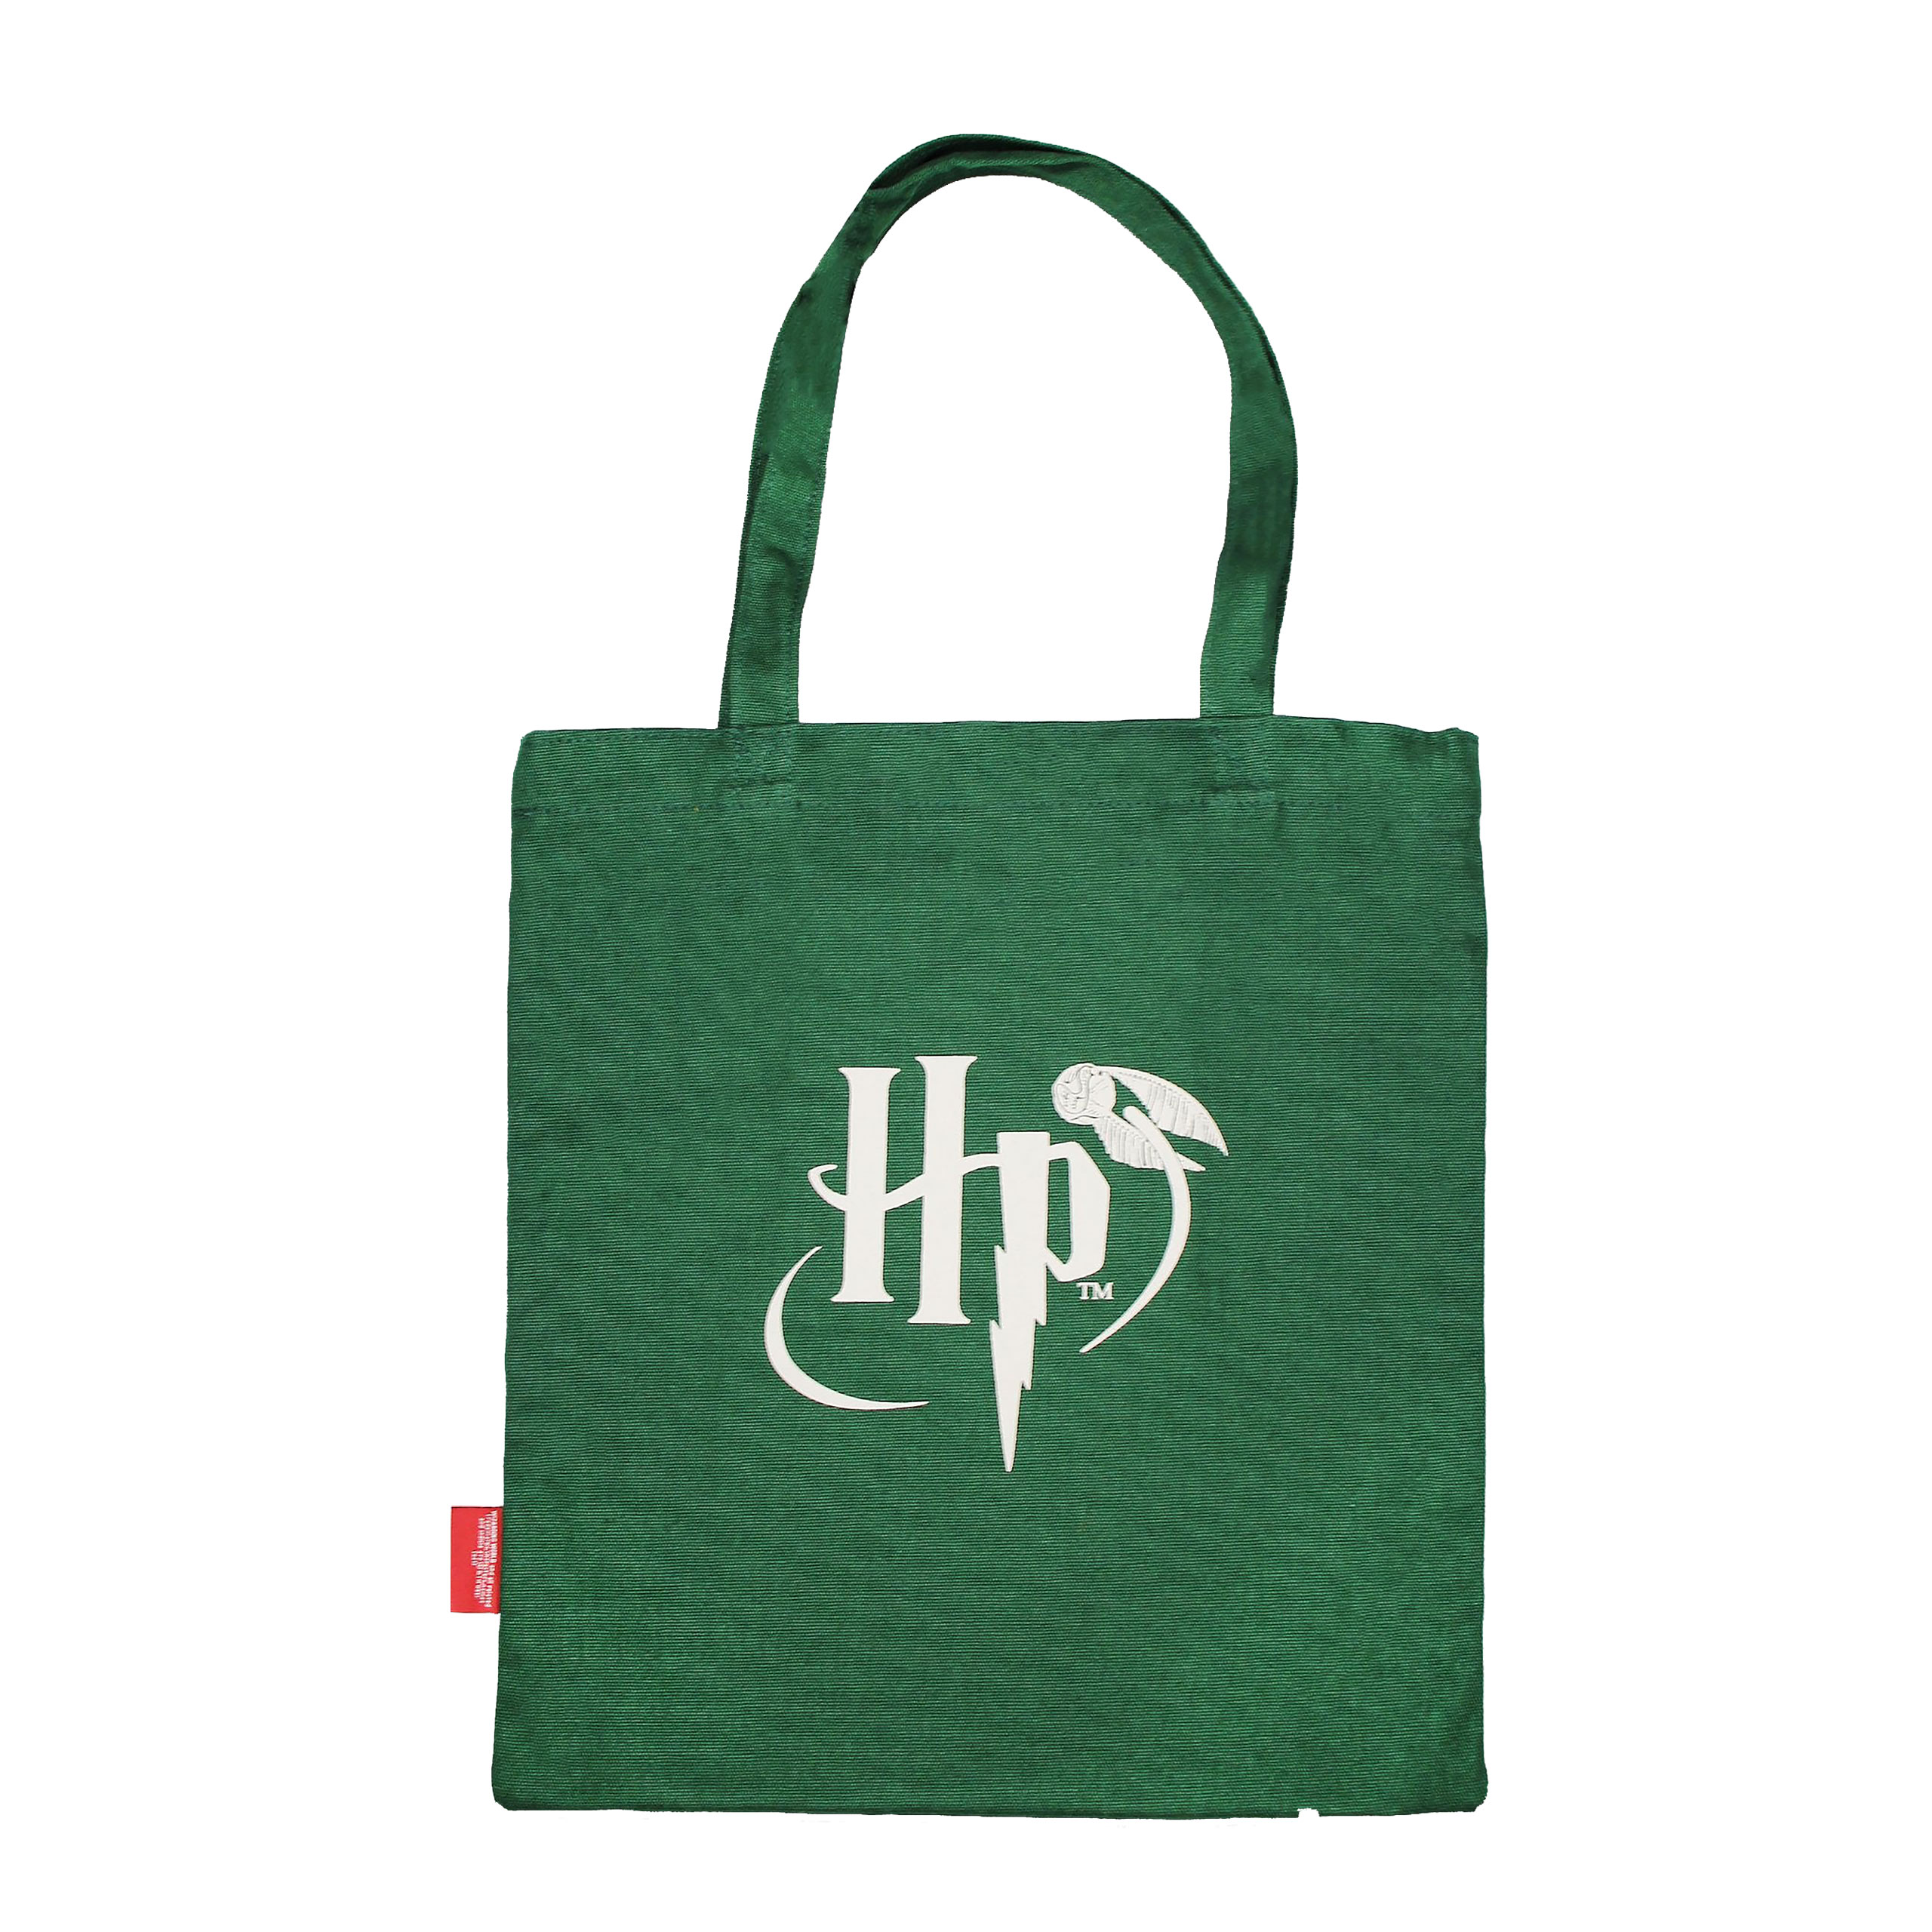 Harry Potter - Slytherin Crest Tote Bag